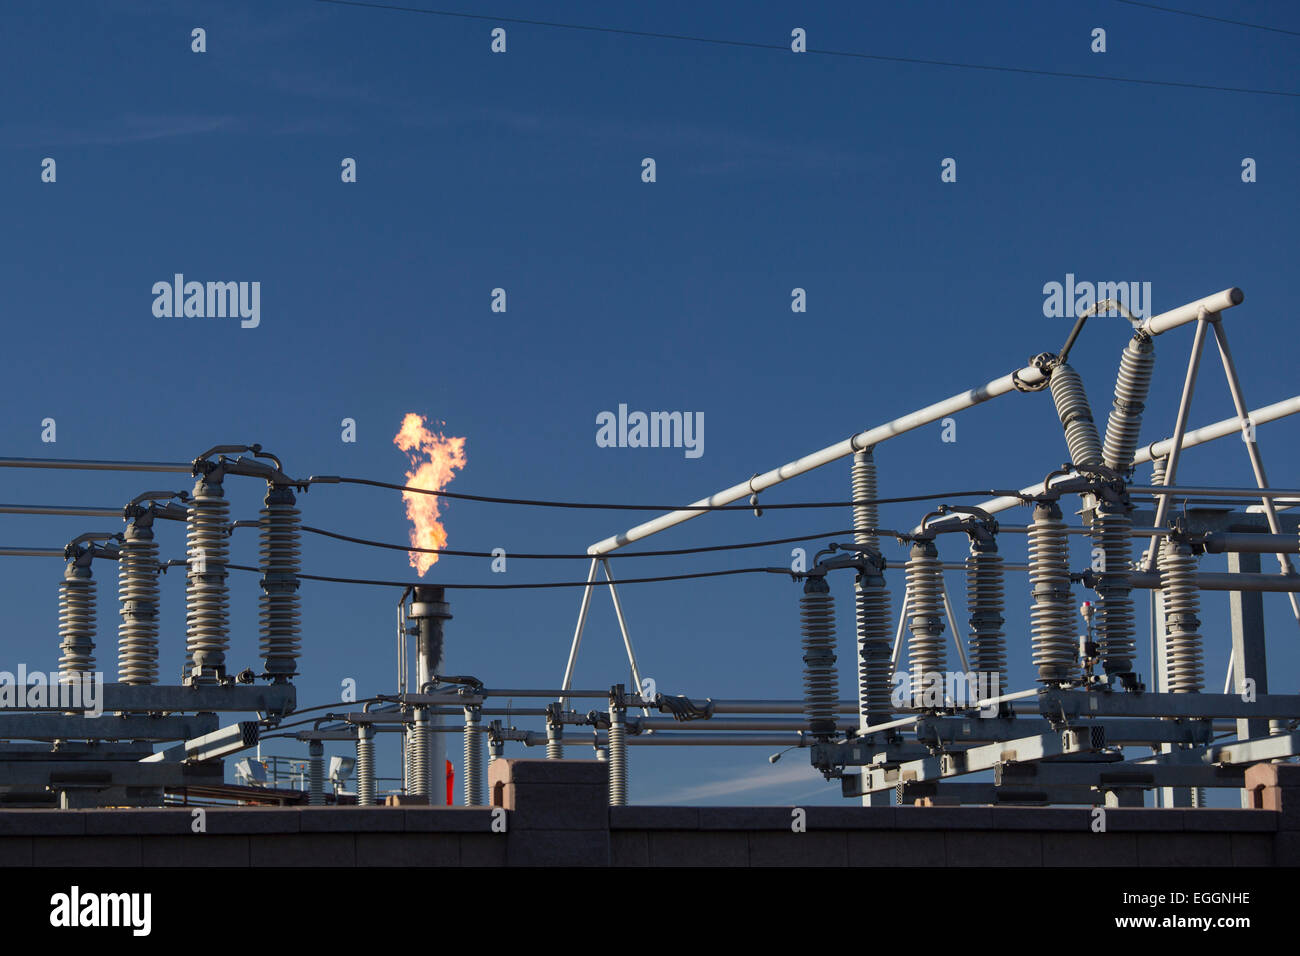 Denver, Colorado - Blendenflecken verbrennt Gas bei in der Nähe von Elektrogeräten an Suncor Energy-Öl-Raffinerie. Stockfoto